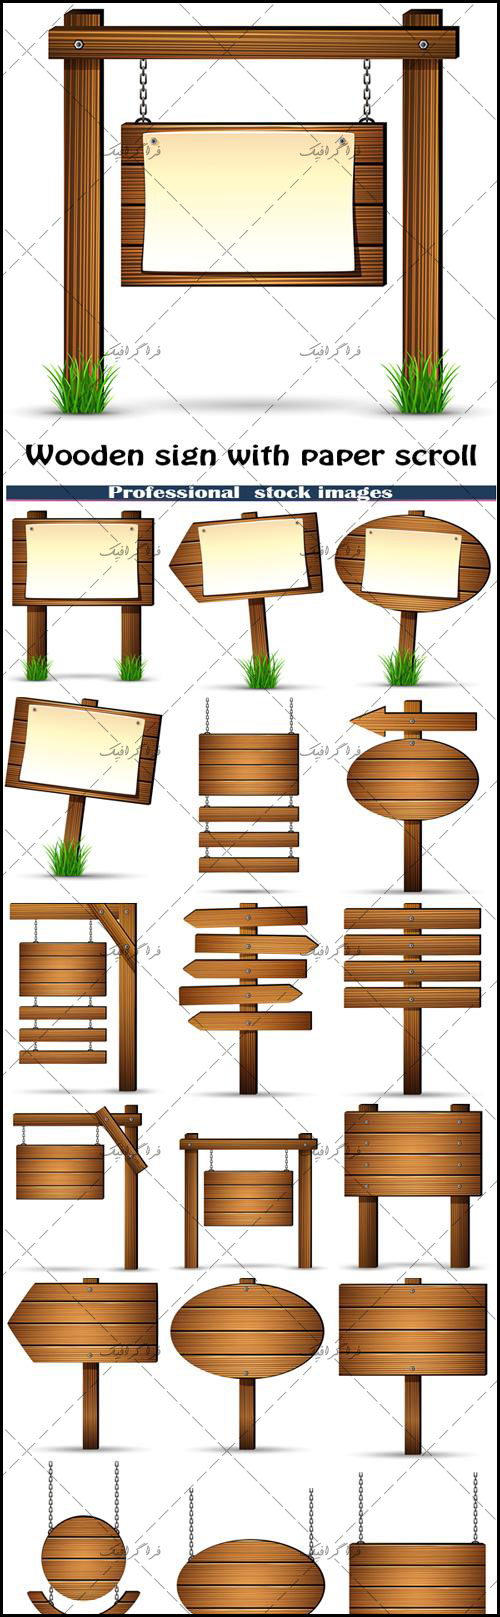 دانلود وکتور تابلو های چوبی - Wood Signs